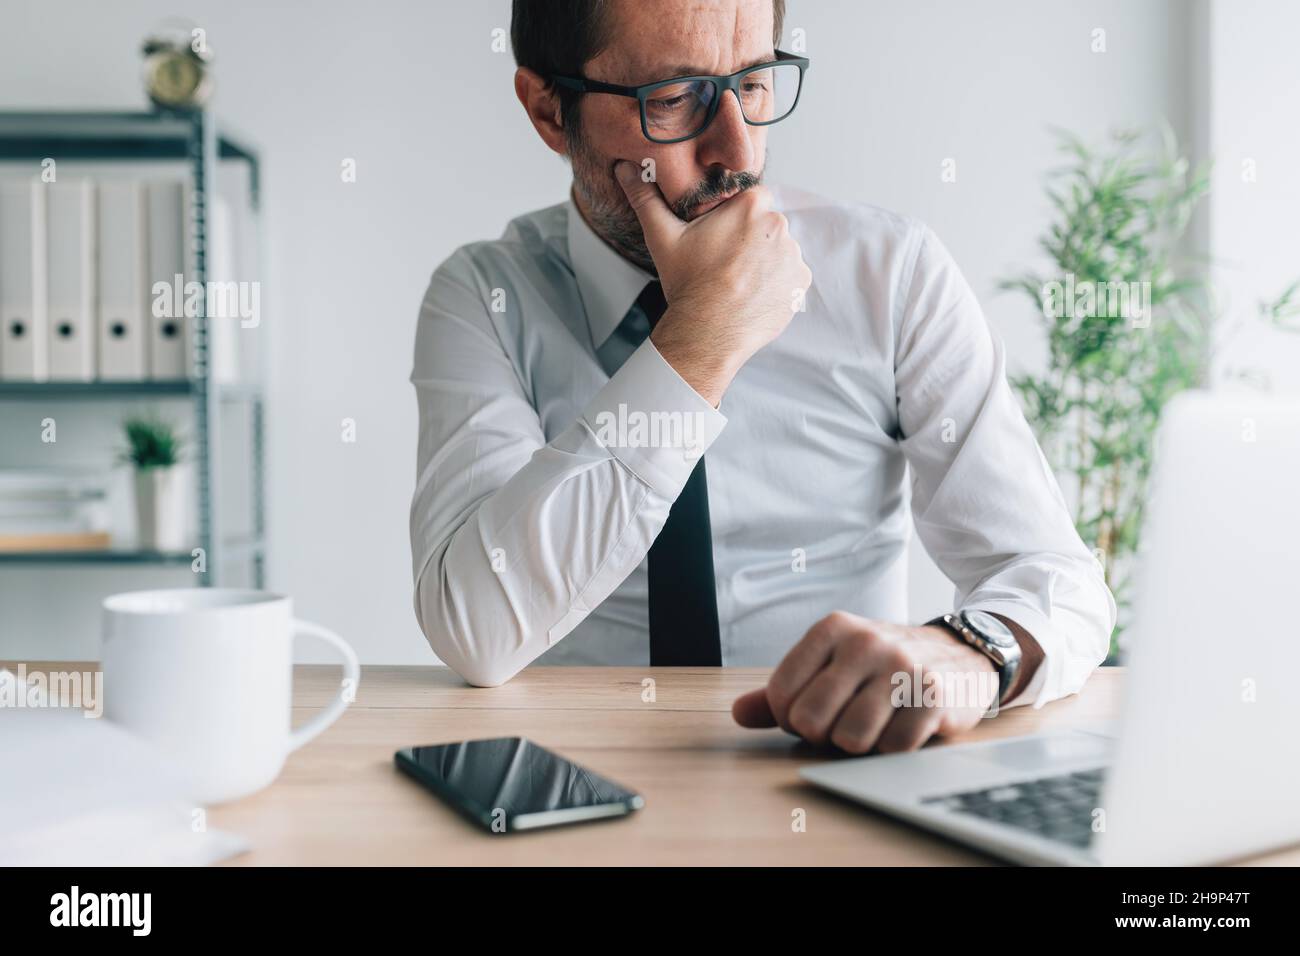 Homme d'affaires caucasien contemplatif regardant l'écran d'ordinateur portable dans le bureau d'affaires avec l'expression faciale perplexe, portrait de l'entr réfléchi Banque D'Images